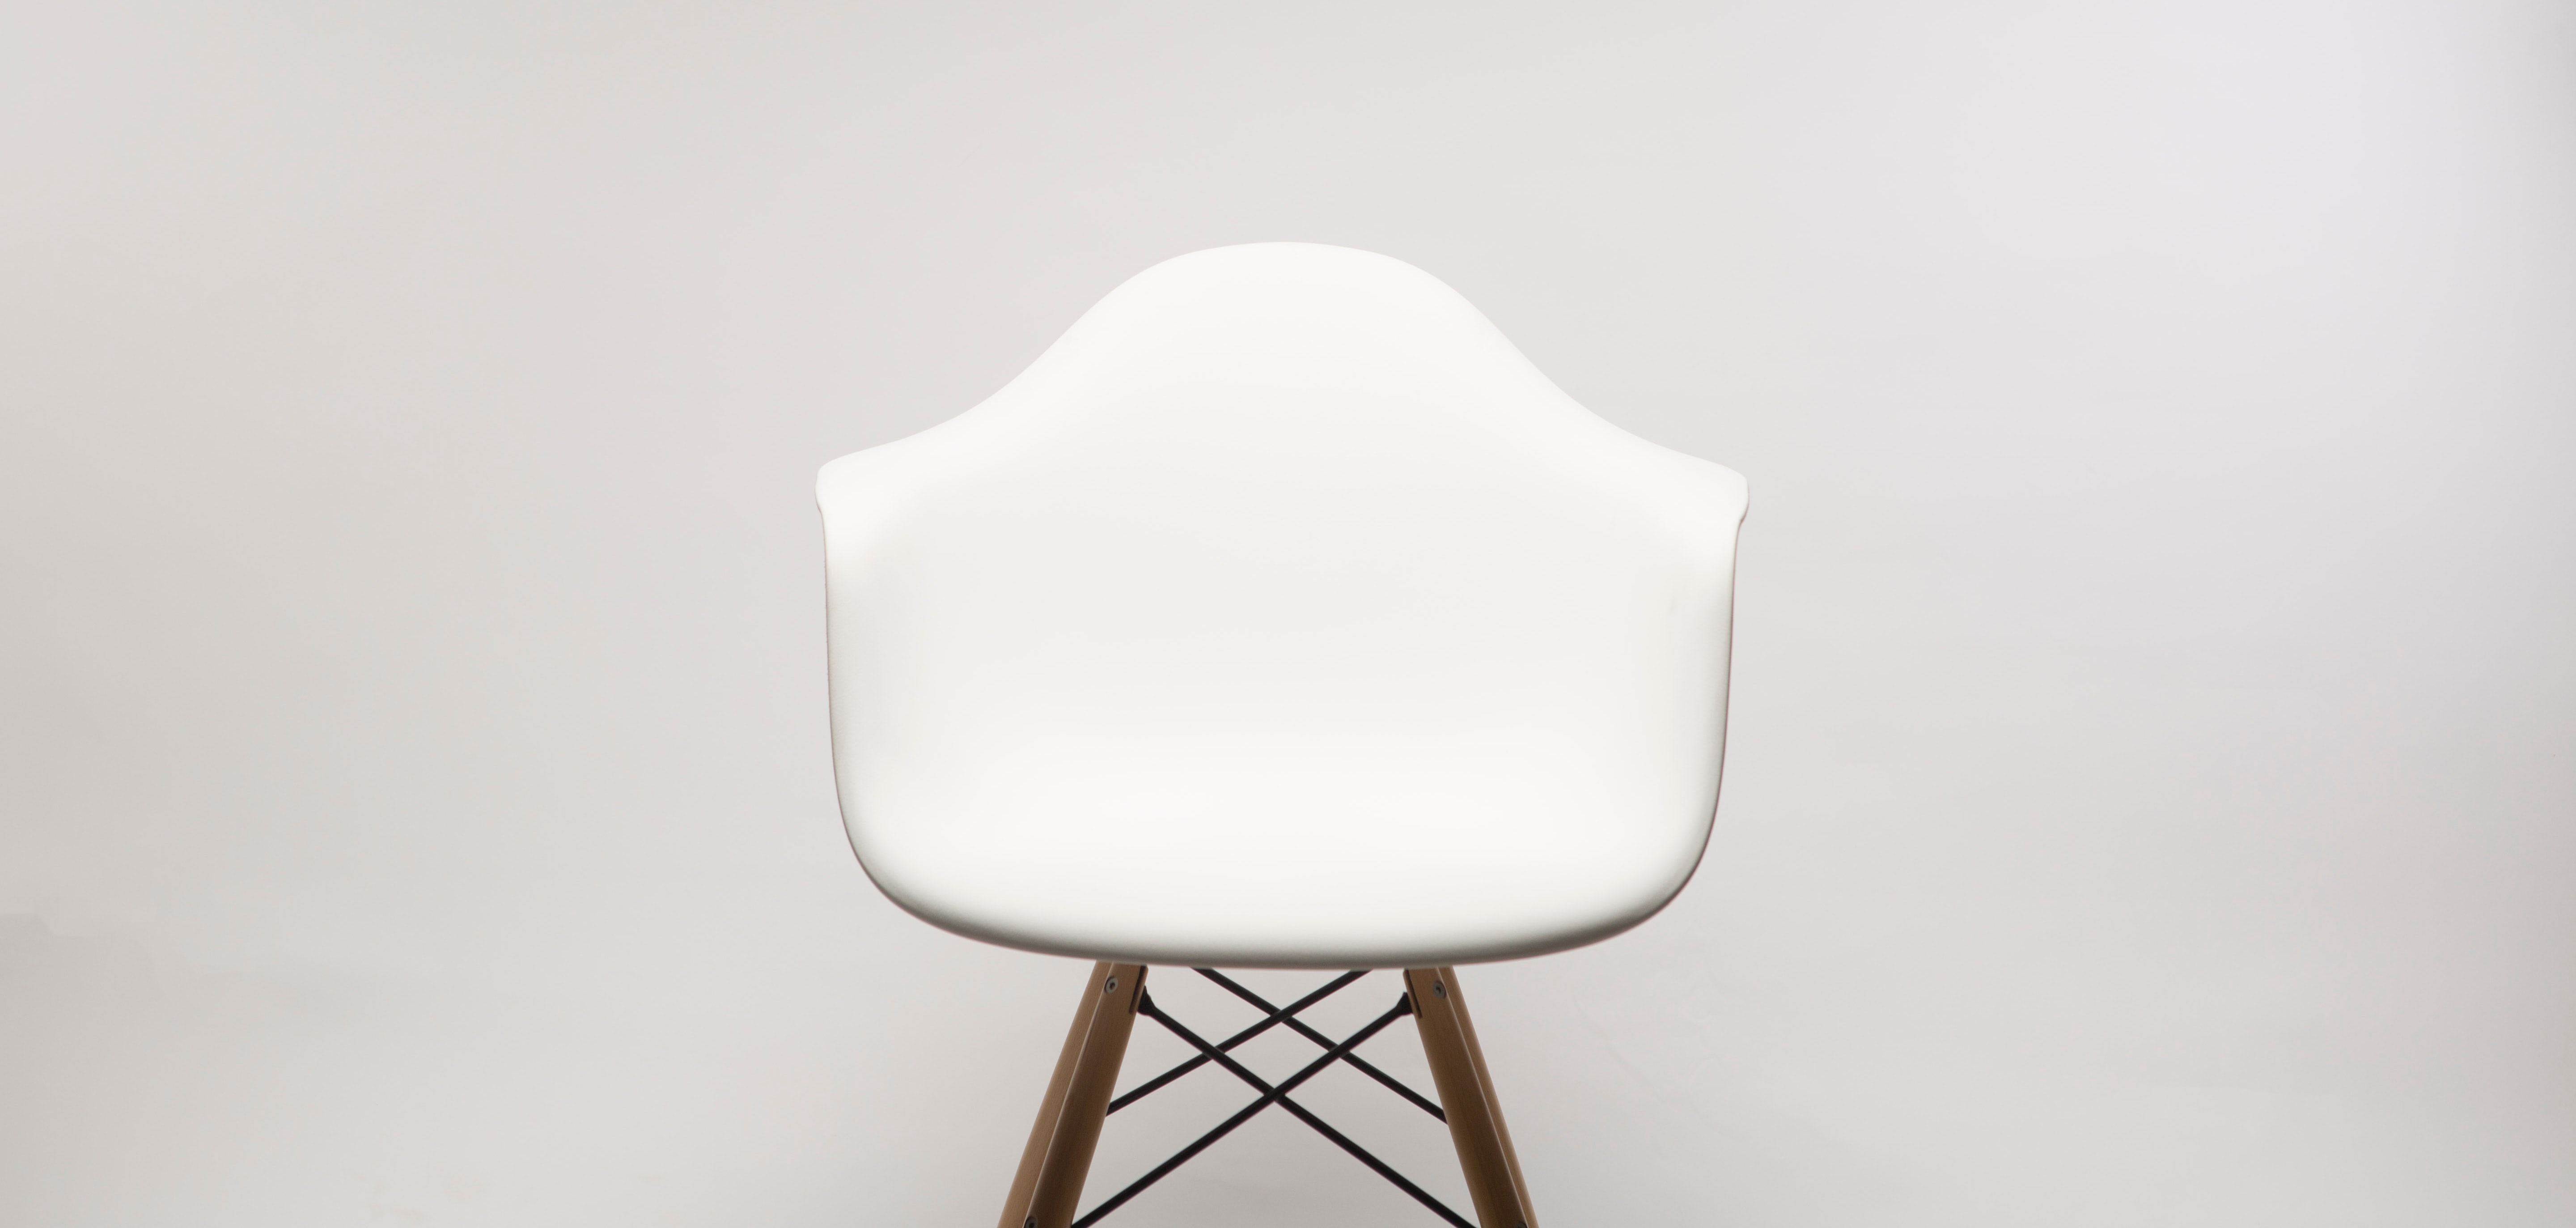 white chair